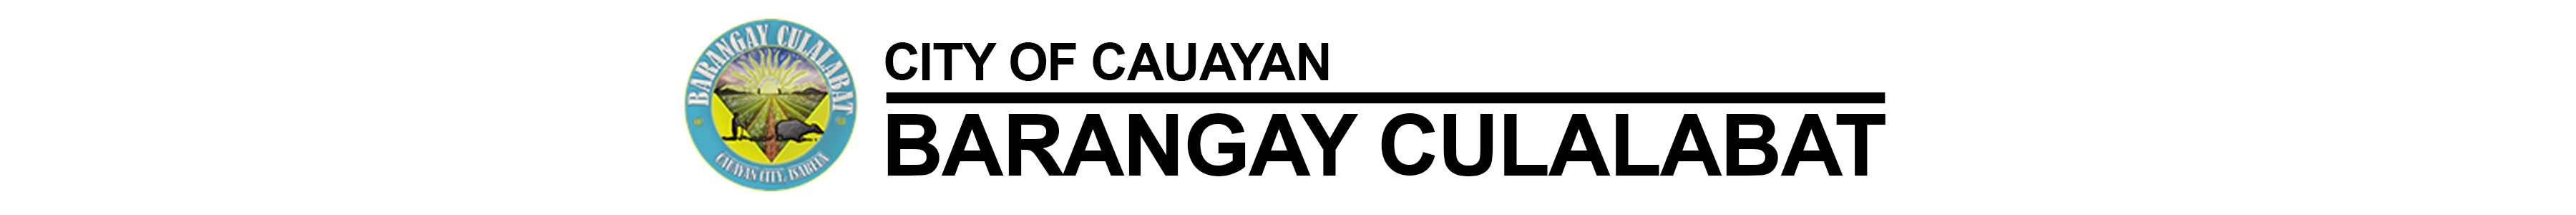 Barangay Culalabat Logo